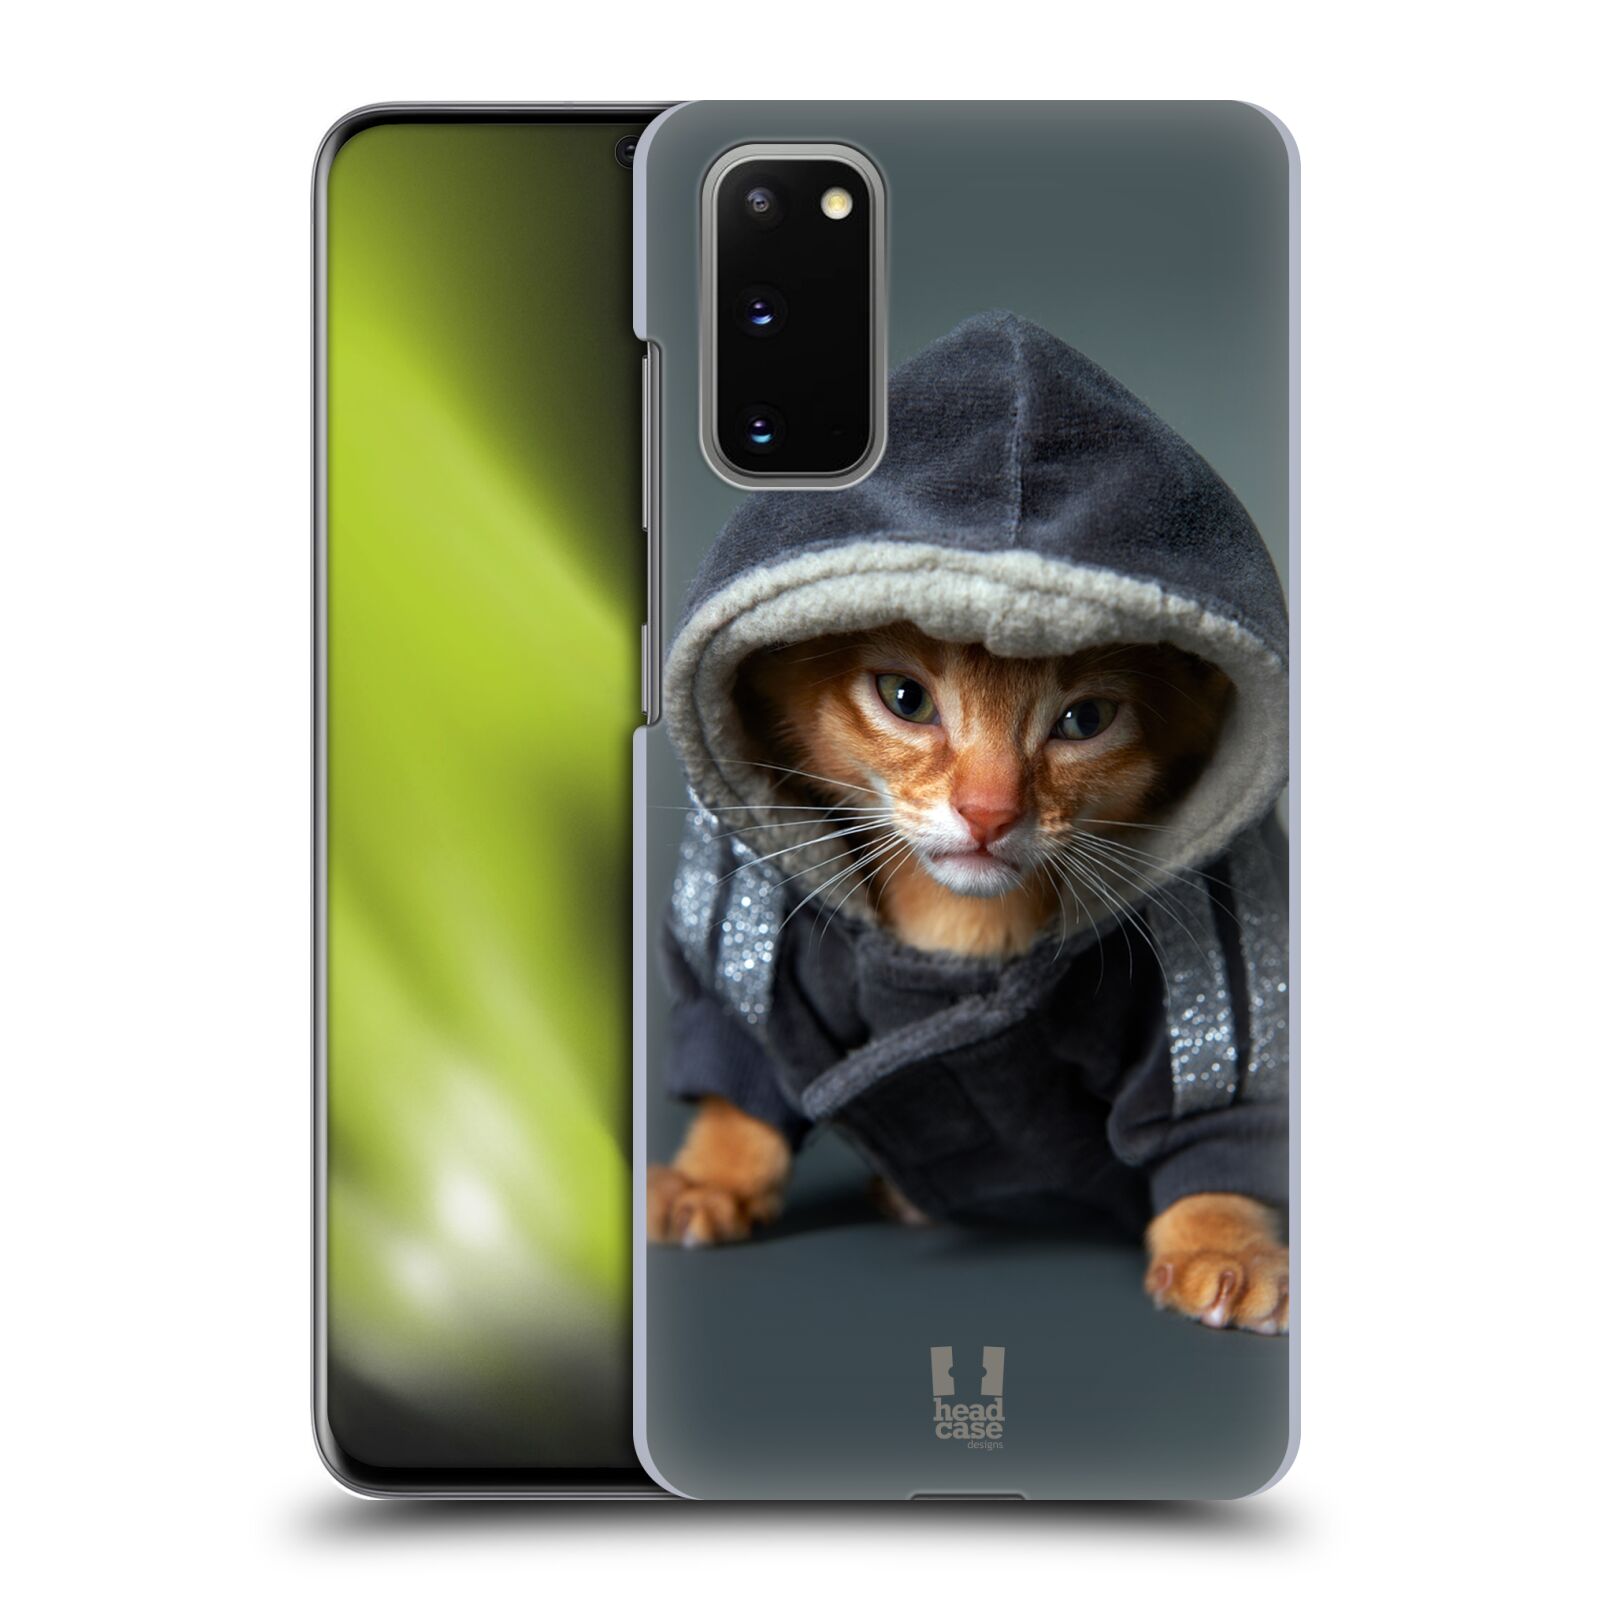 Pouzdro na mobil Samsung Galaxy S20 - HEAD CASE - vzor Legrační zvířátka kotě/kočička s kapucí